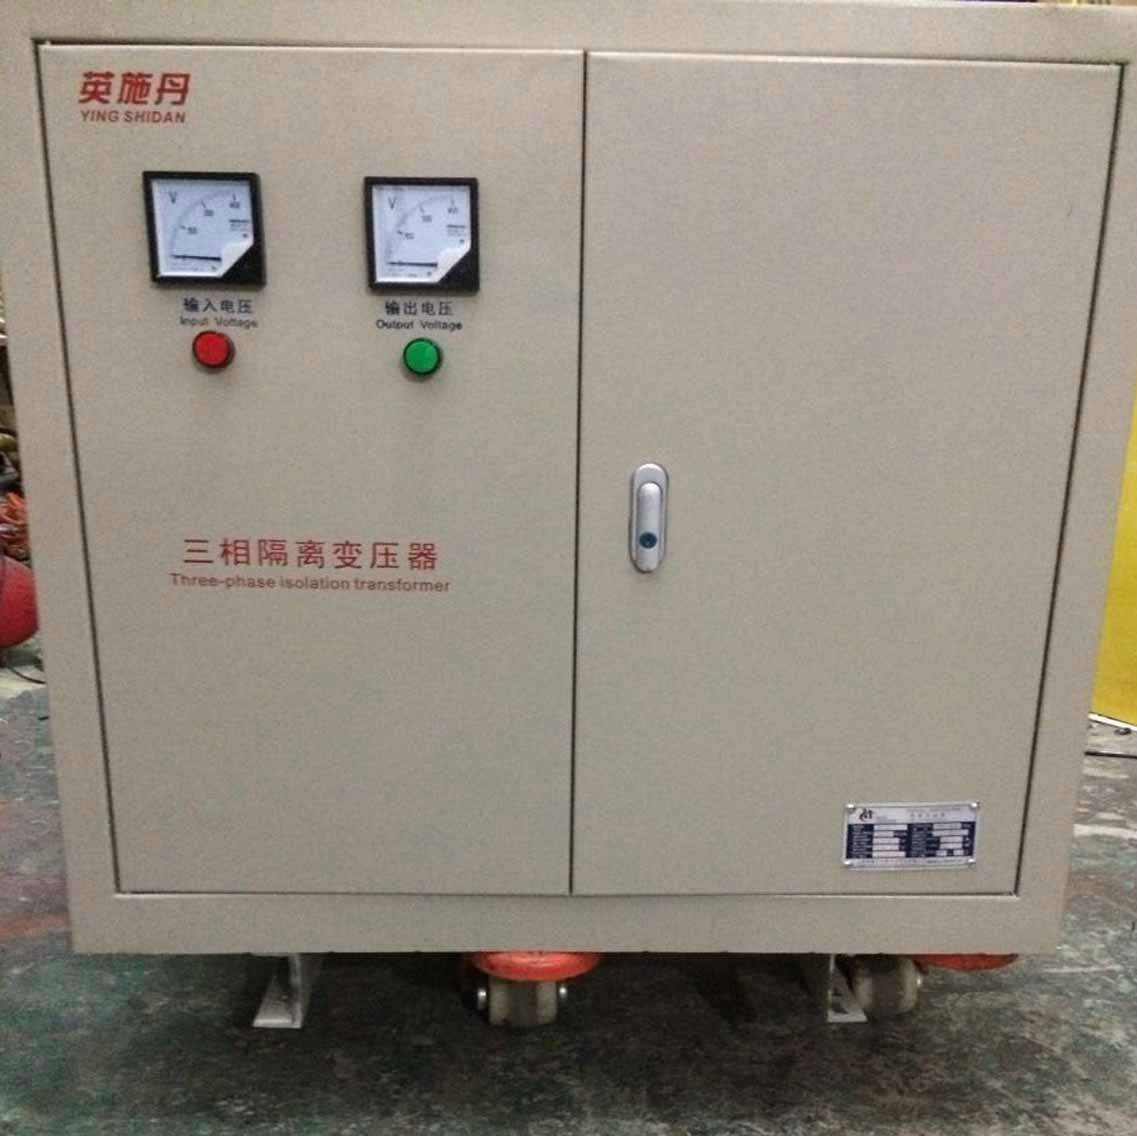 上海英施丹電器設備製造有限公司